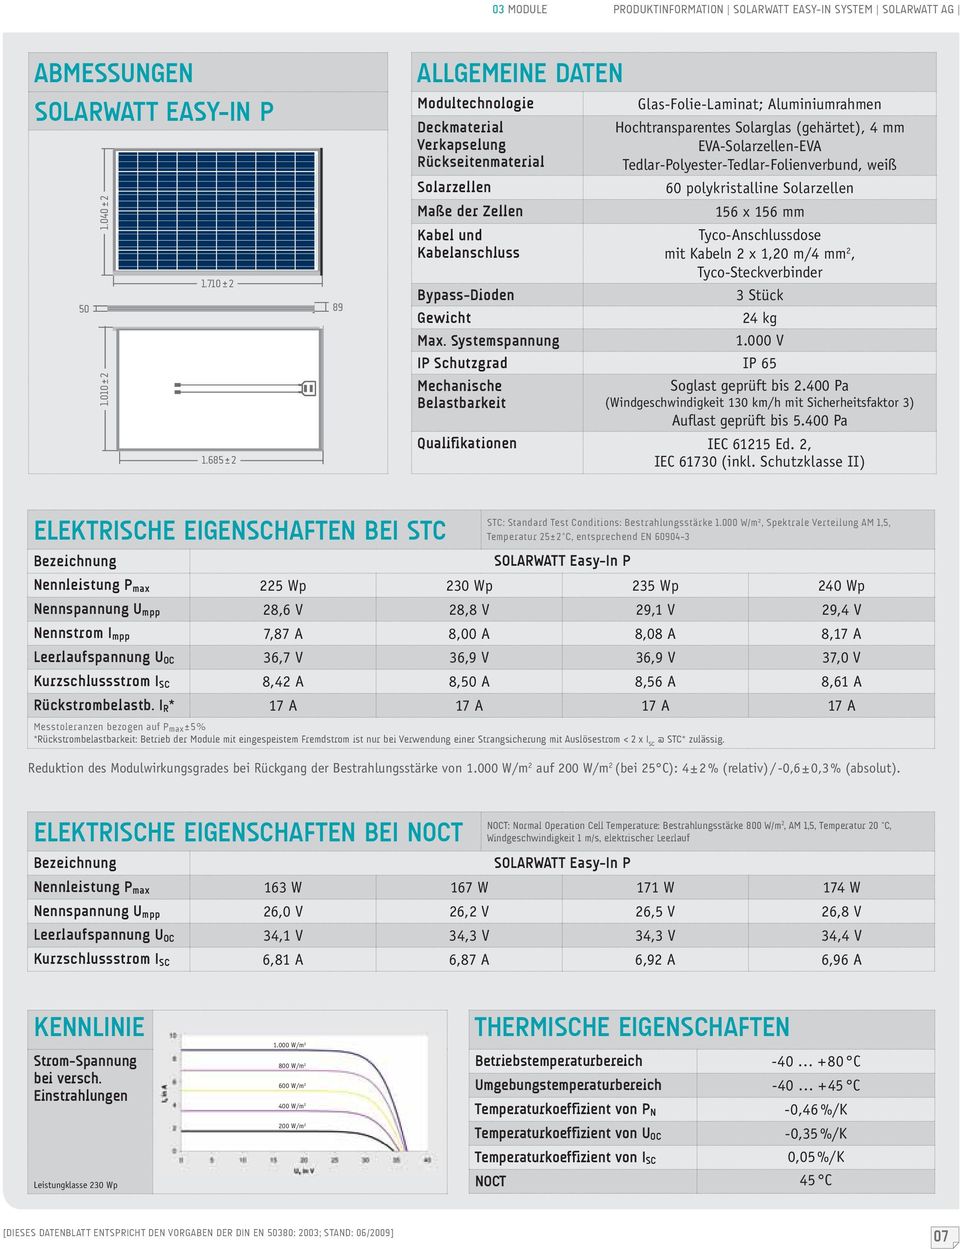 Solarglas (gehärtet), 4 mm EVA-Solarzellen-EVA Tedlar-Polyester-Tedlar-Folienverbund, weiß 60 polykristalline Solarzellen 156 x 156 mm Tyco-Anschlussdose mit Kabeln 2 x 1,20 m/4 mm 2,